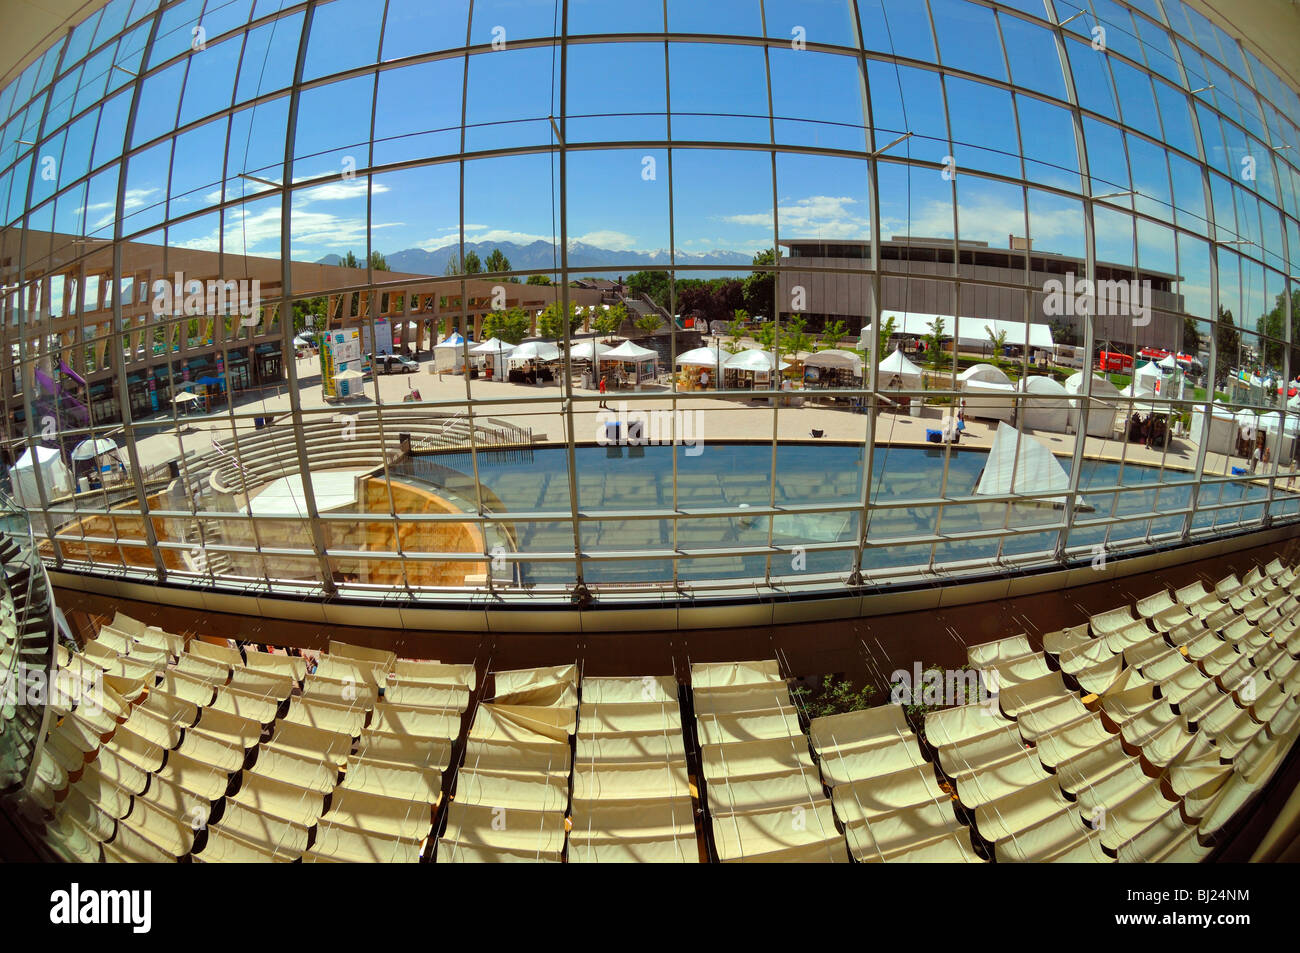 Als ein Beispiel für hervorragende bürgerliche Architektur der City Public Library in Salt Lake City ein hohes Renommee, Utah hat gefeiert. Stockfoto